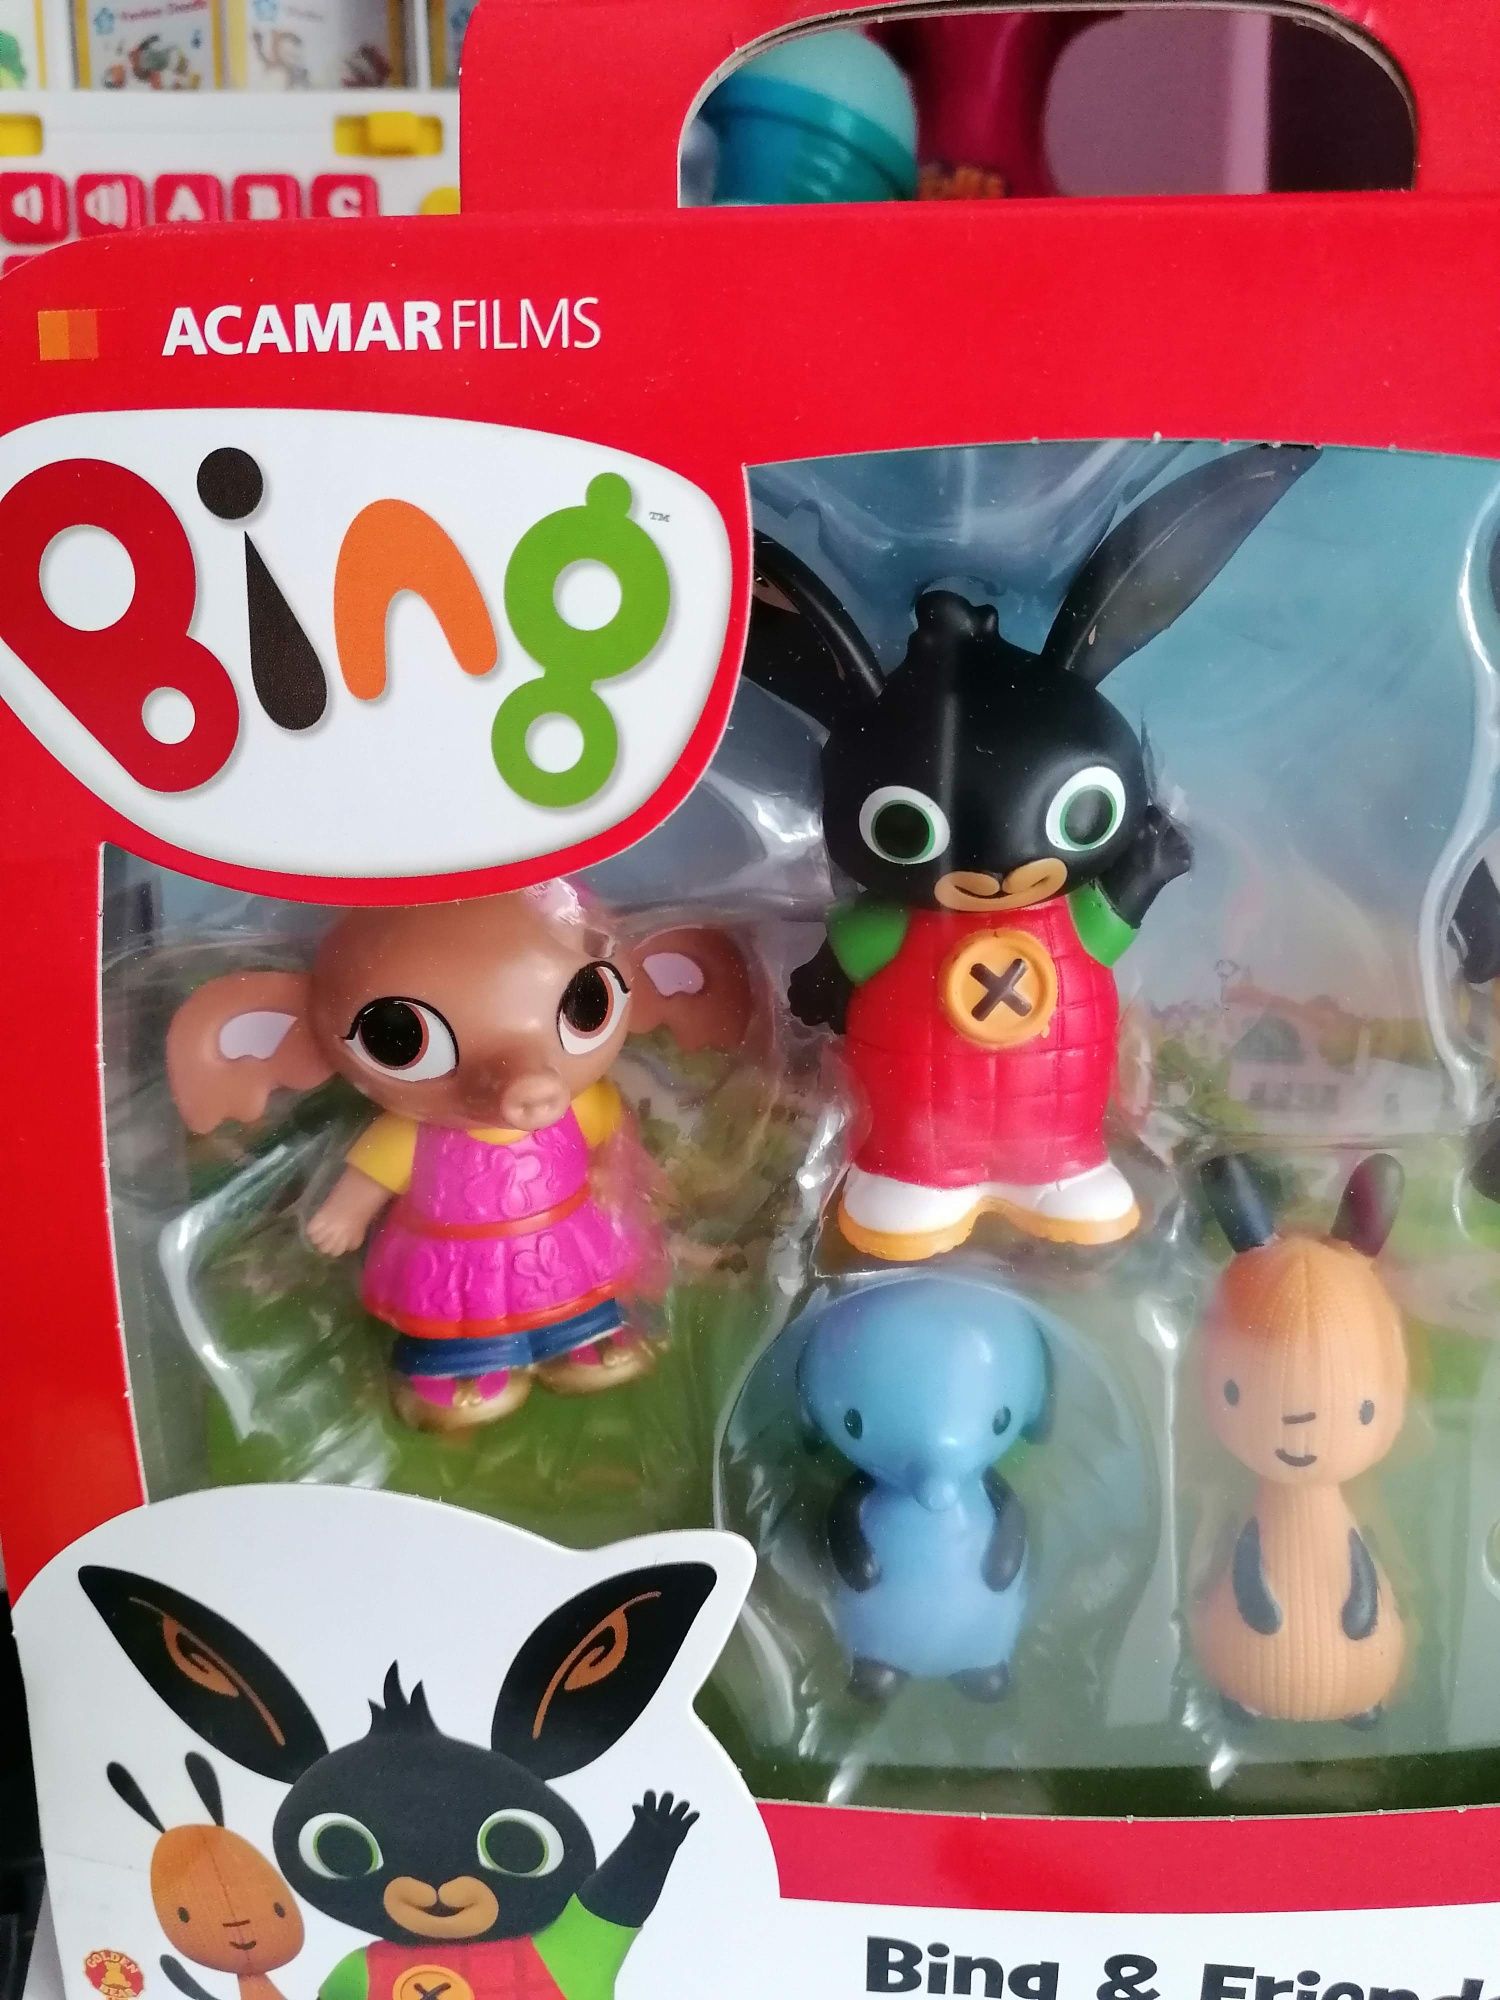 Set de 6 figurine Bing si prietenii NOU